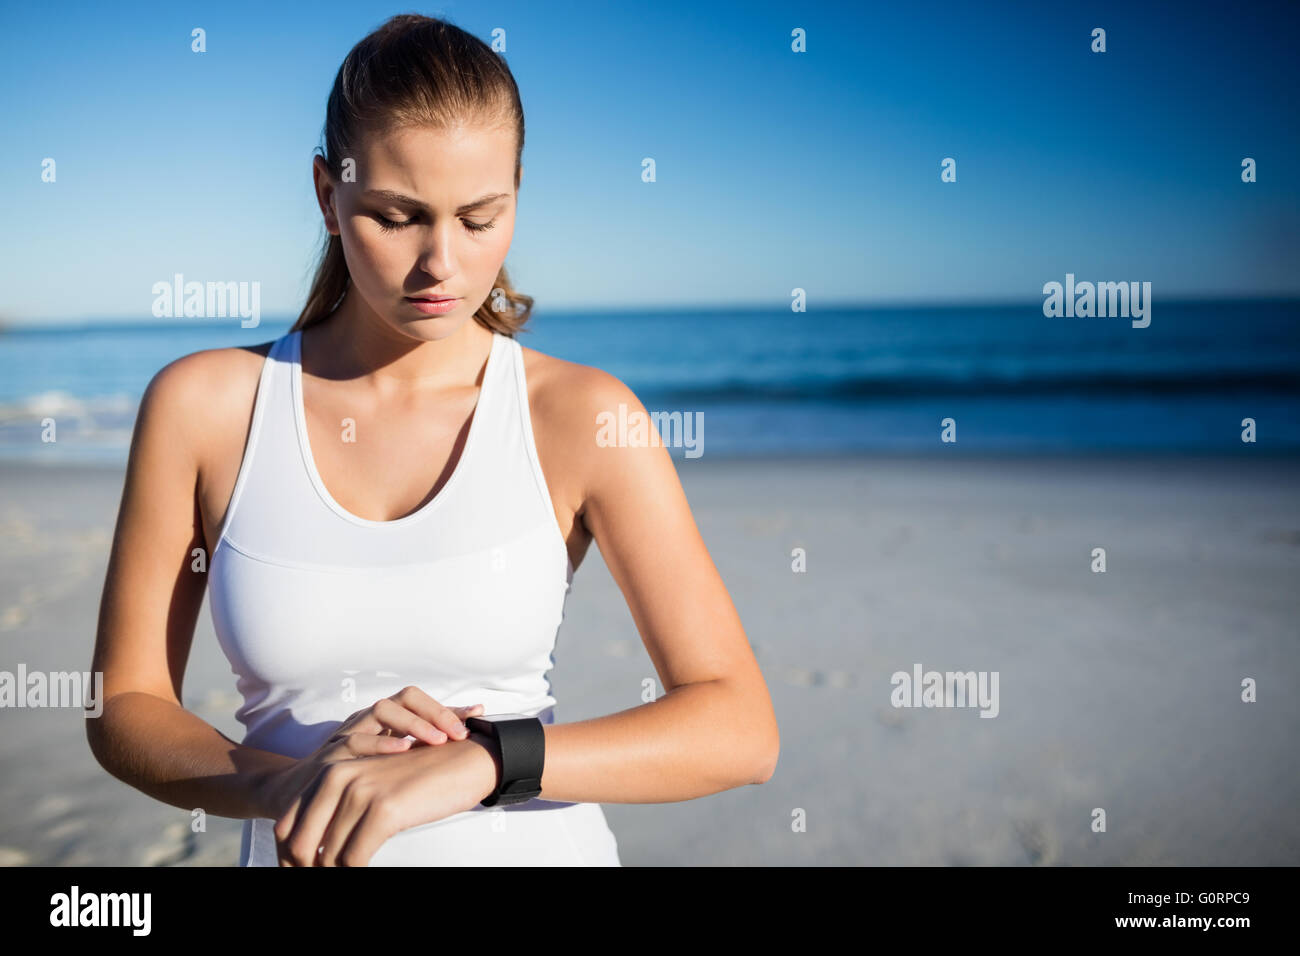 Woman using a smart watch Stock Photo